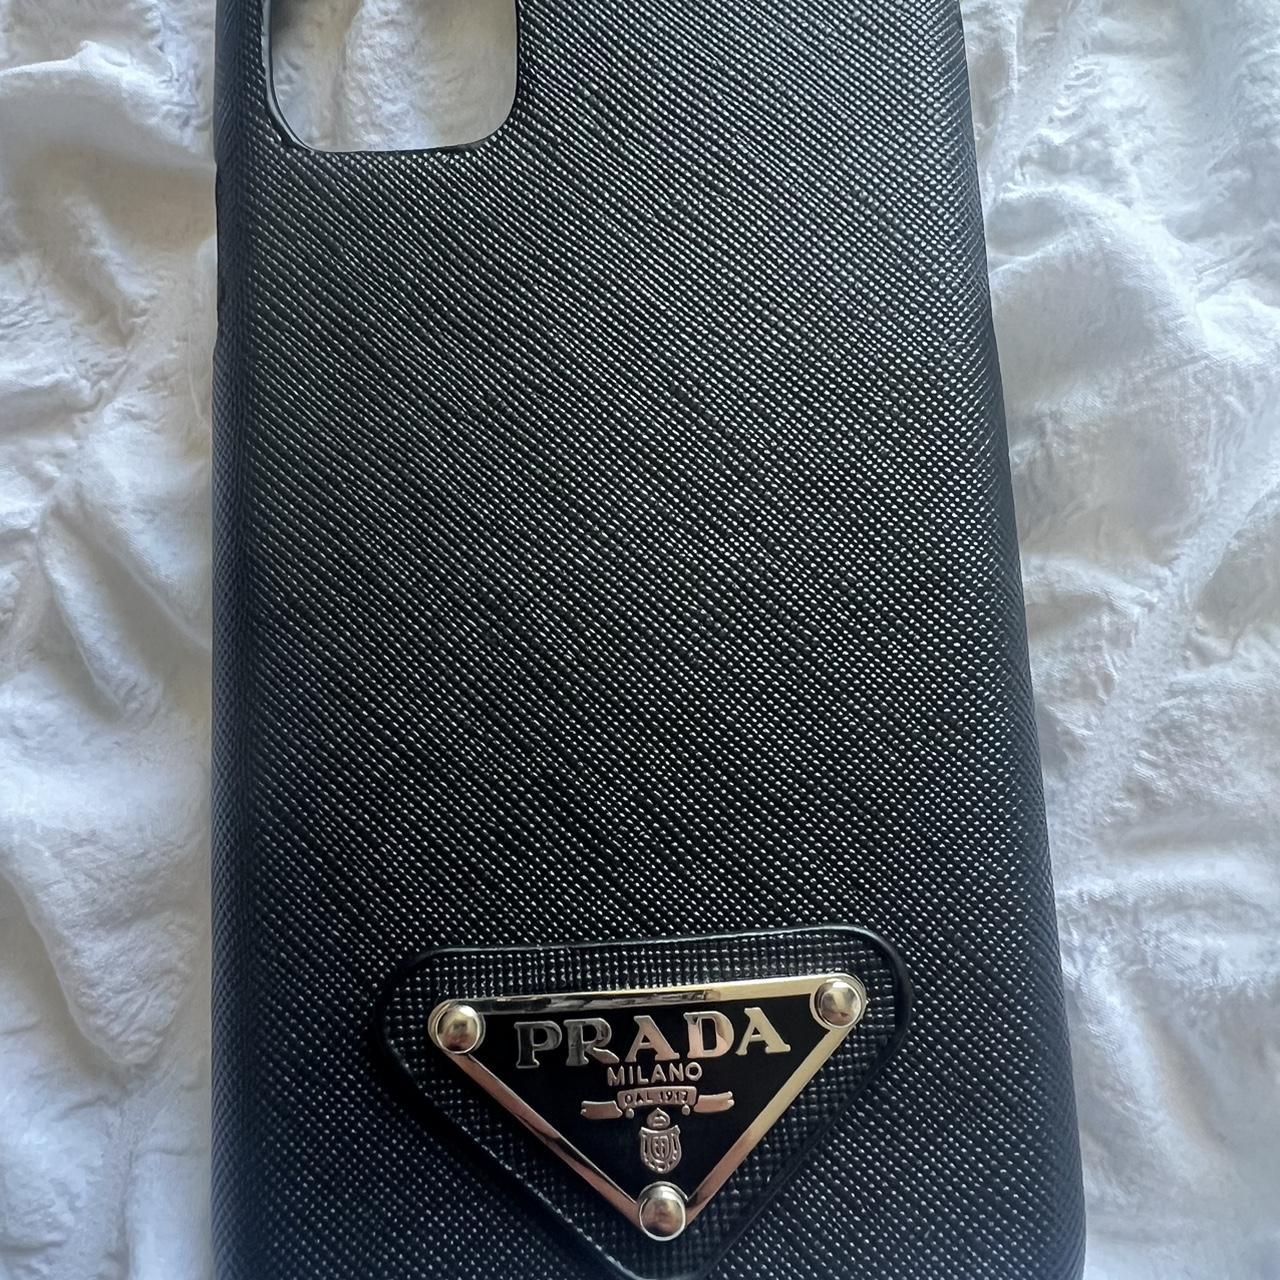 Prada phone case For iPhone 11 Brilliant quality - Depop